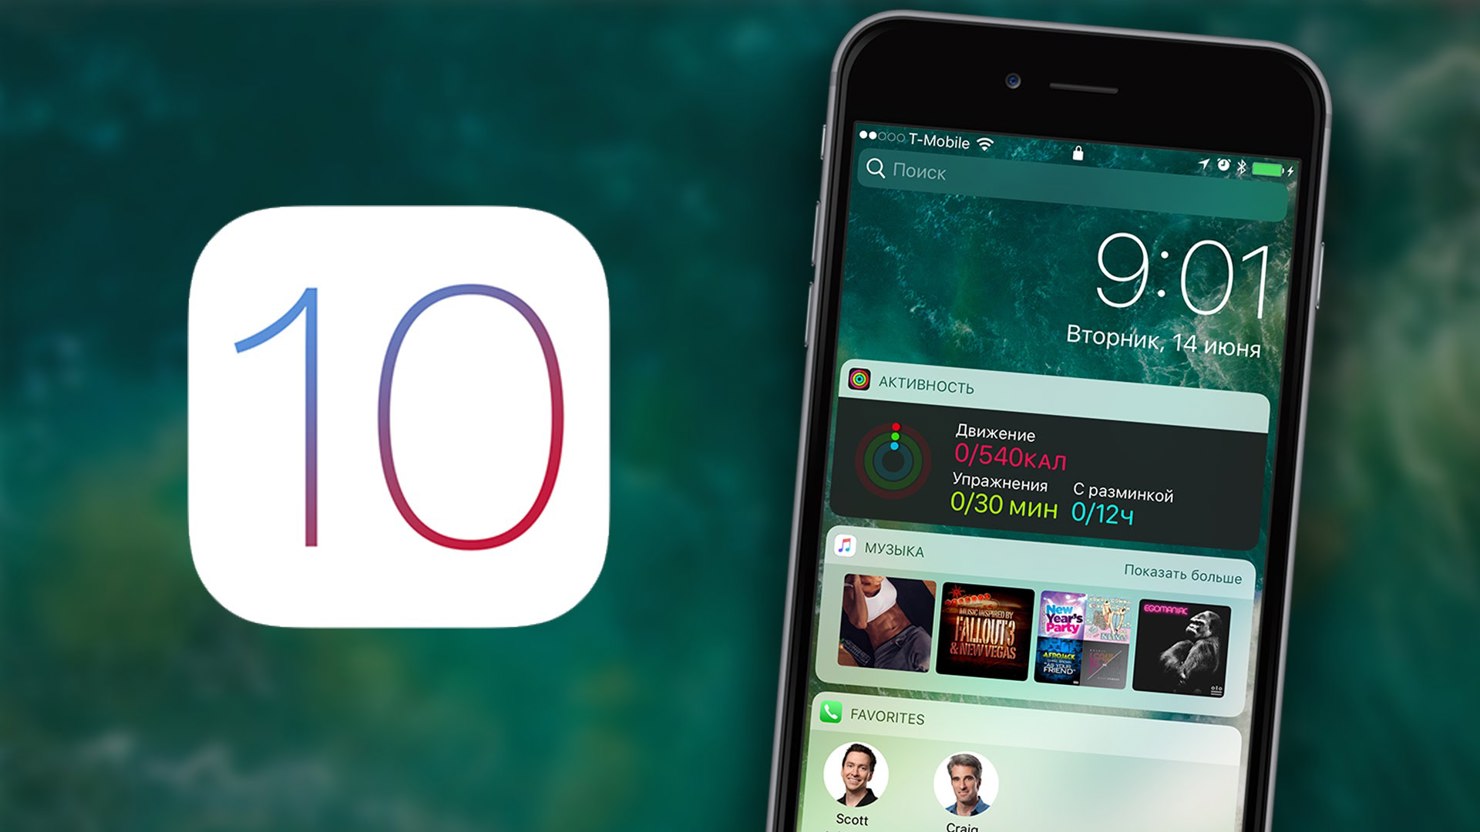 Trong iOS 10, Apple đã tích hợp nhiều chức năng mới cho tin nhắn.